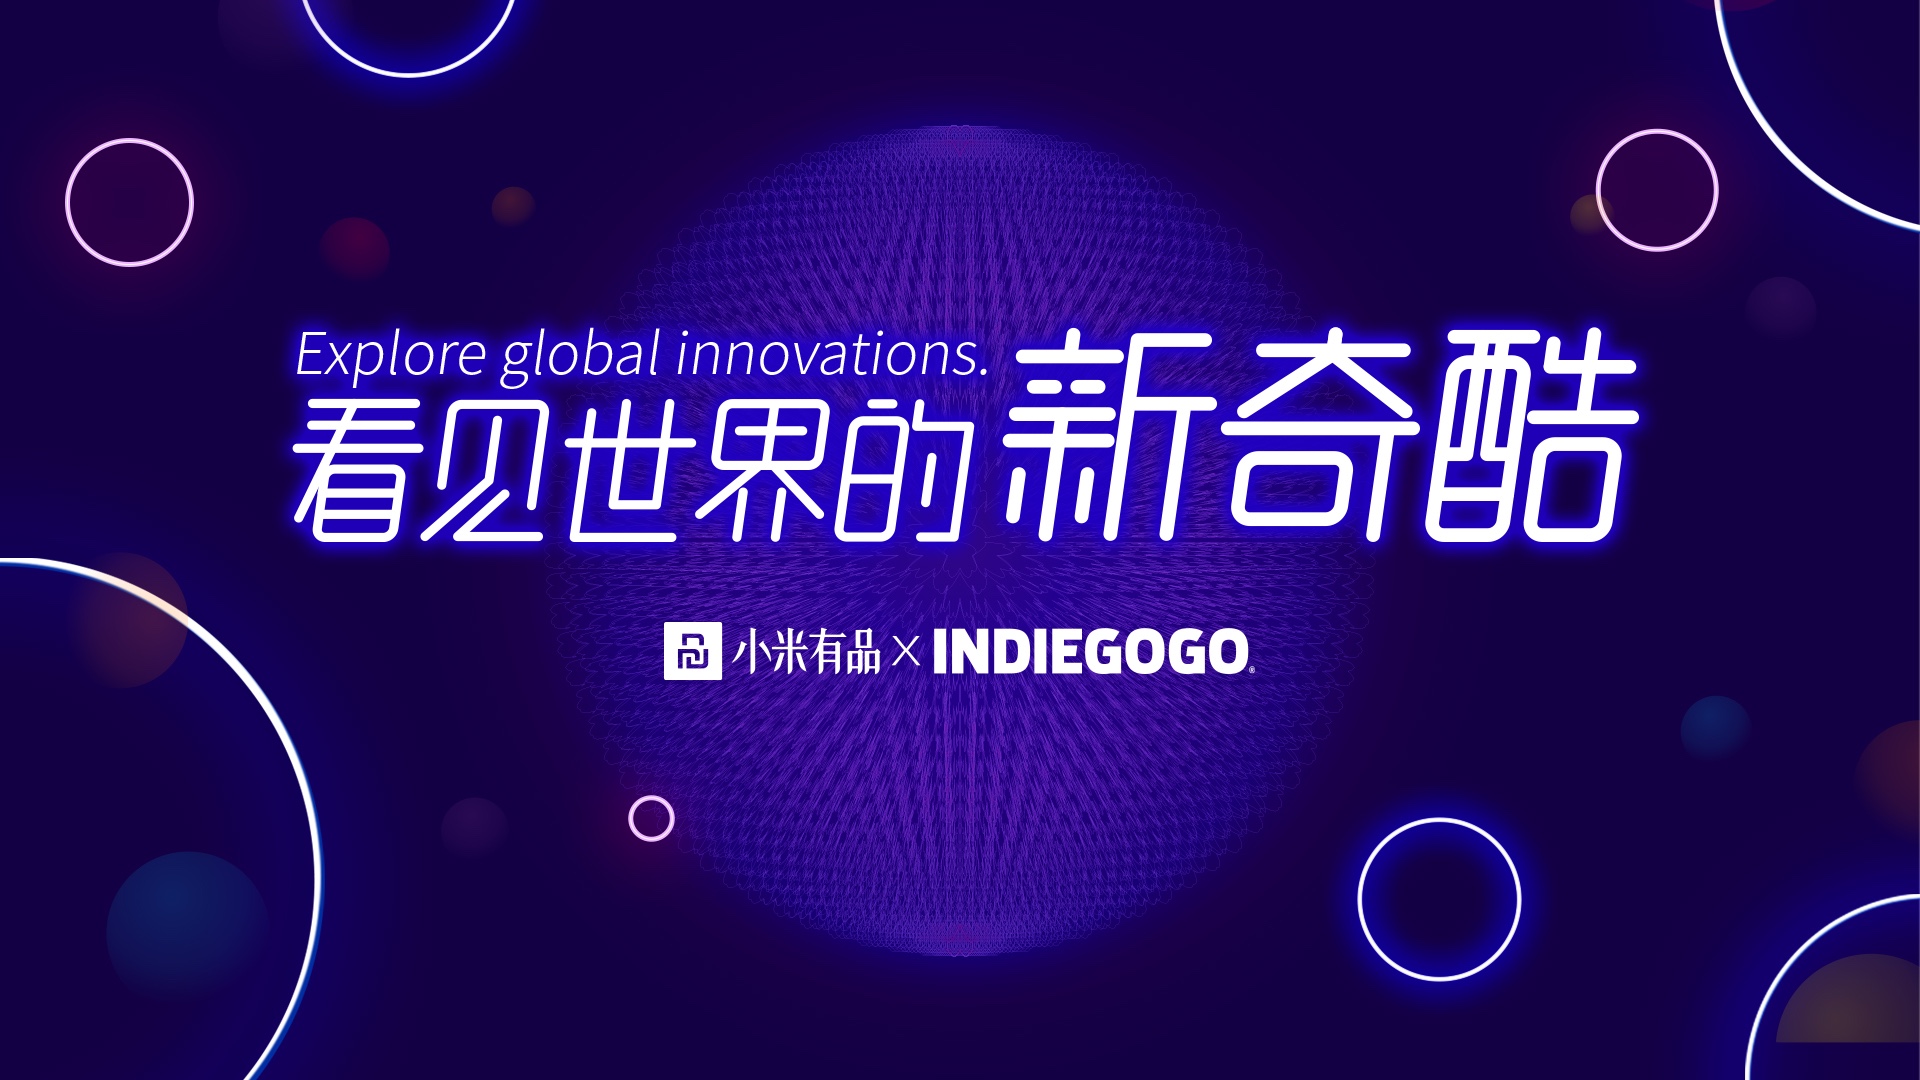 小米有品探索海外市场 与Indiegogo达成深度合作 智能公会